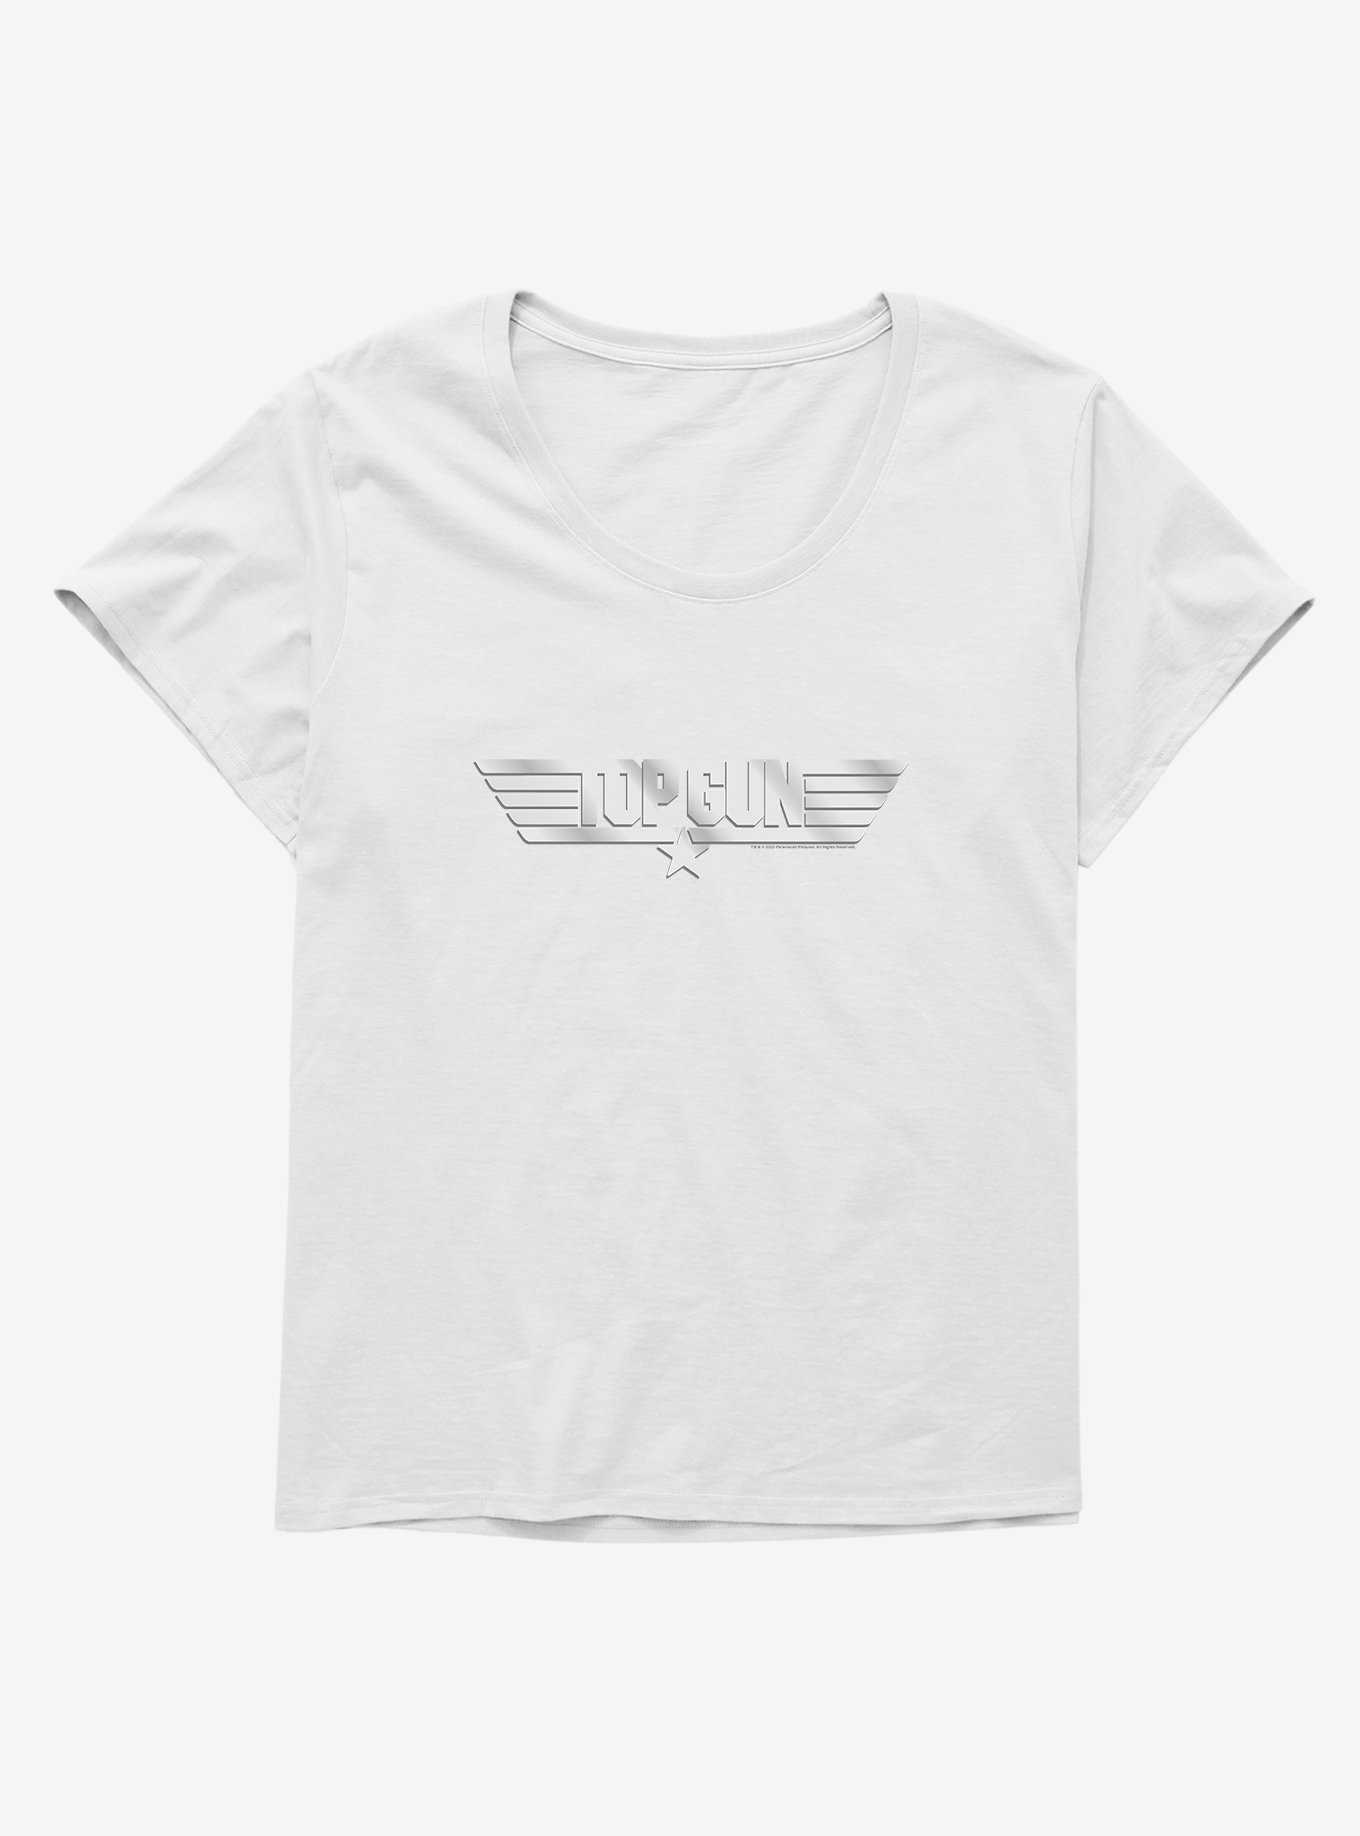 Top Gun Metal Logo Girls T-Shirt Plus Size, , hi-res